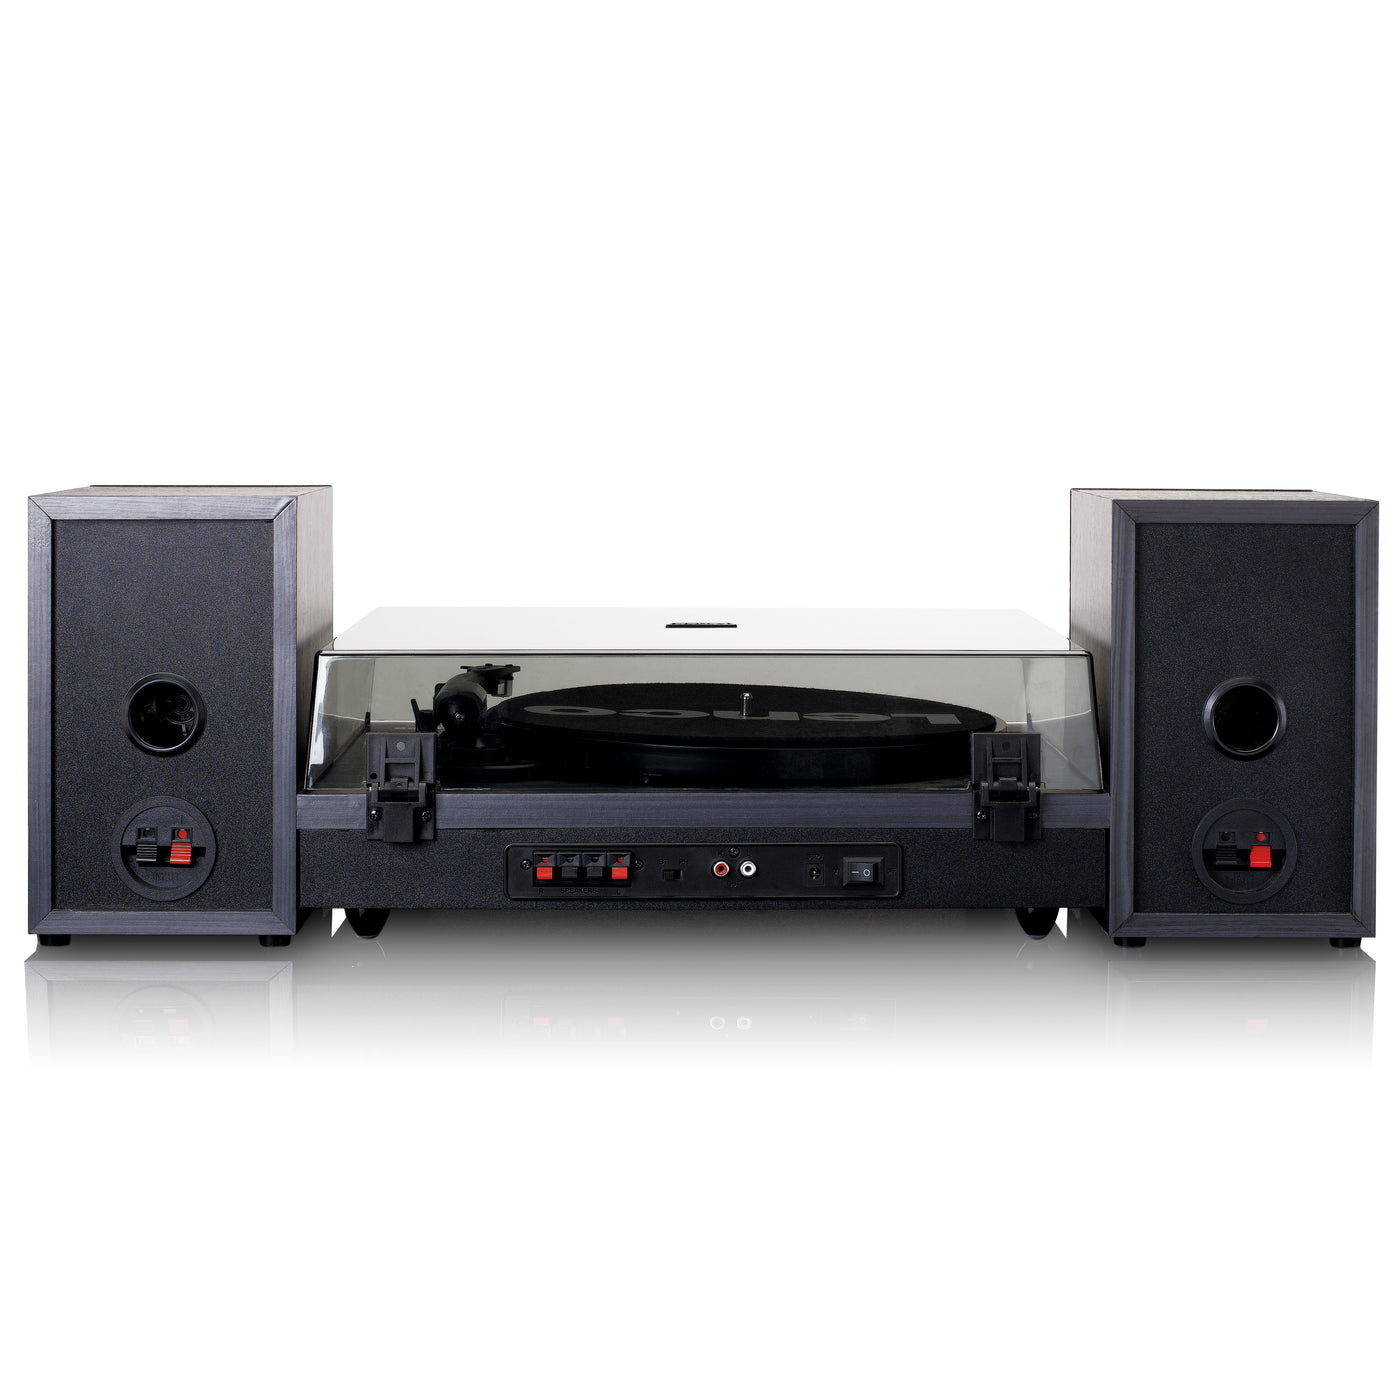 LENCO LS-301BK - Platenspeler met Bluetooth® en twee externe speakers, zwart